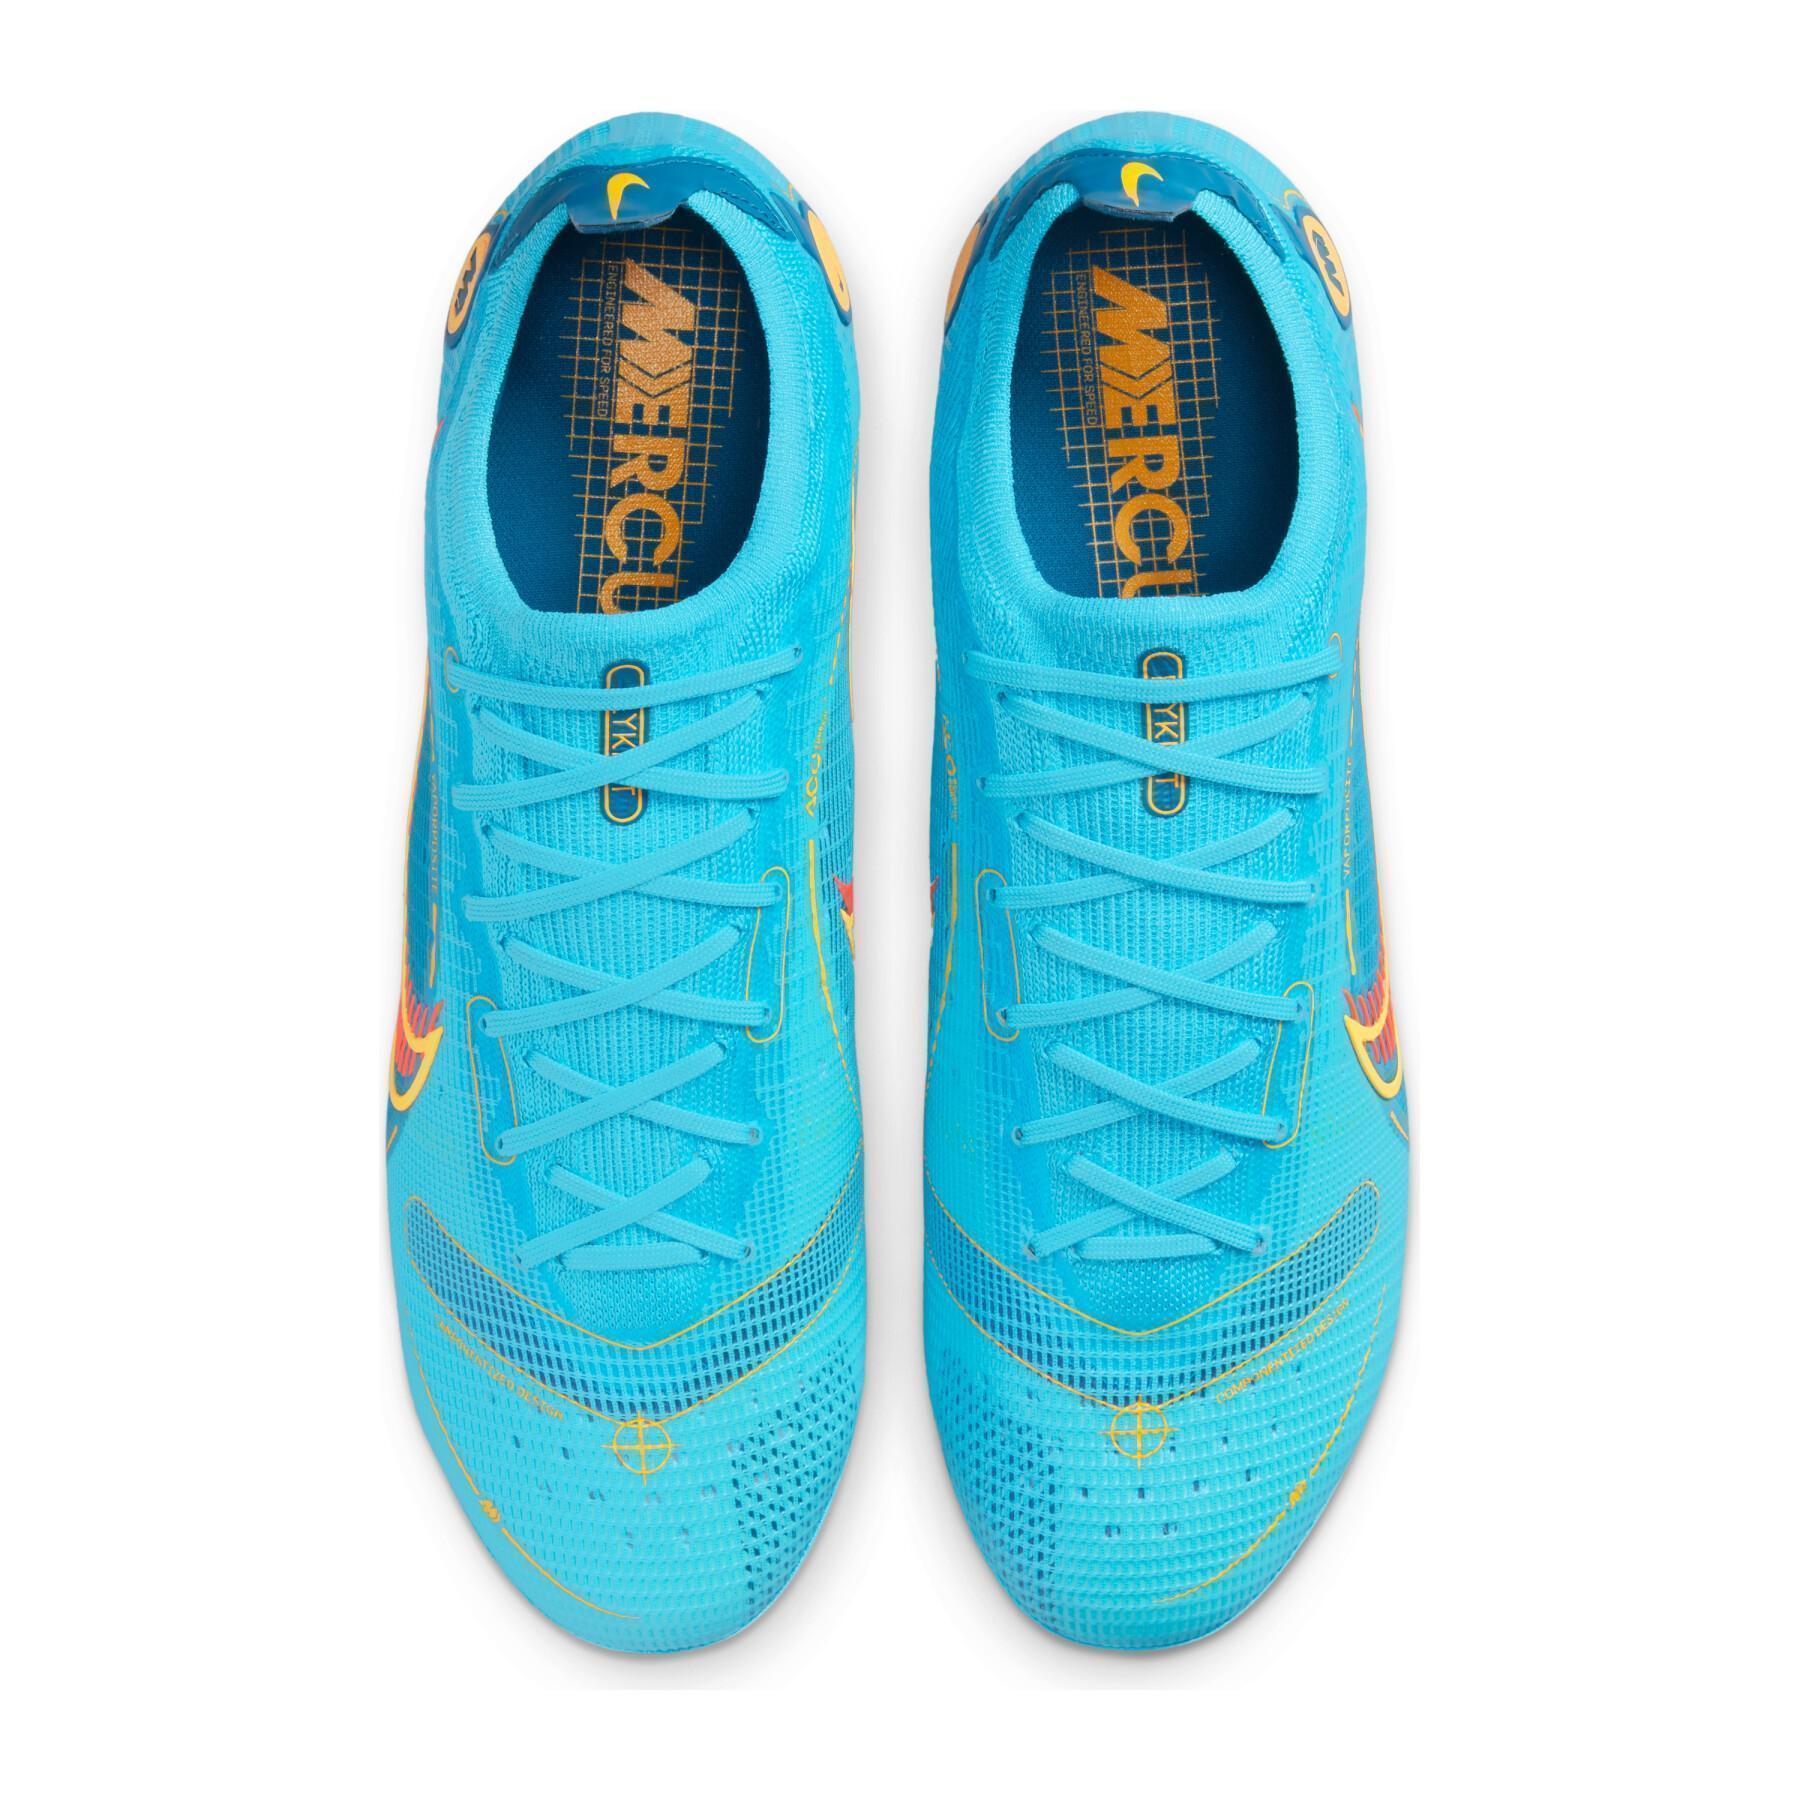 Chaussures de football Nike Mercurial Vapor 14 Élite FG -Blueprint Pack